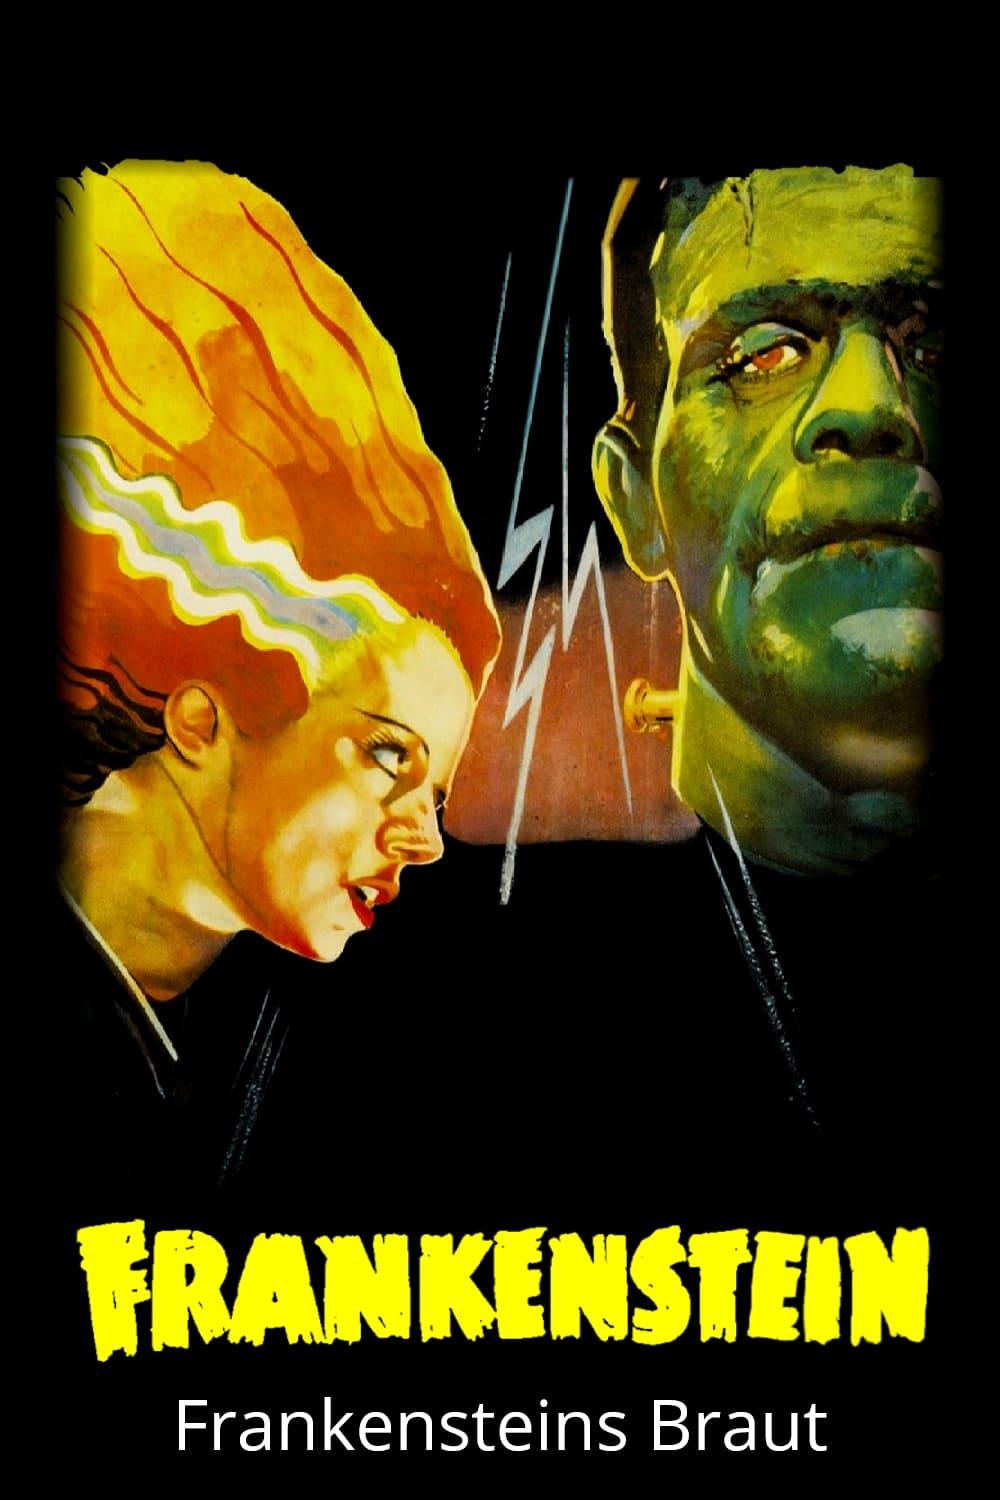 Frankensteins Braut poster